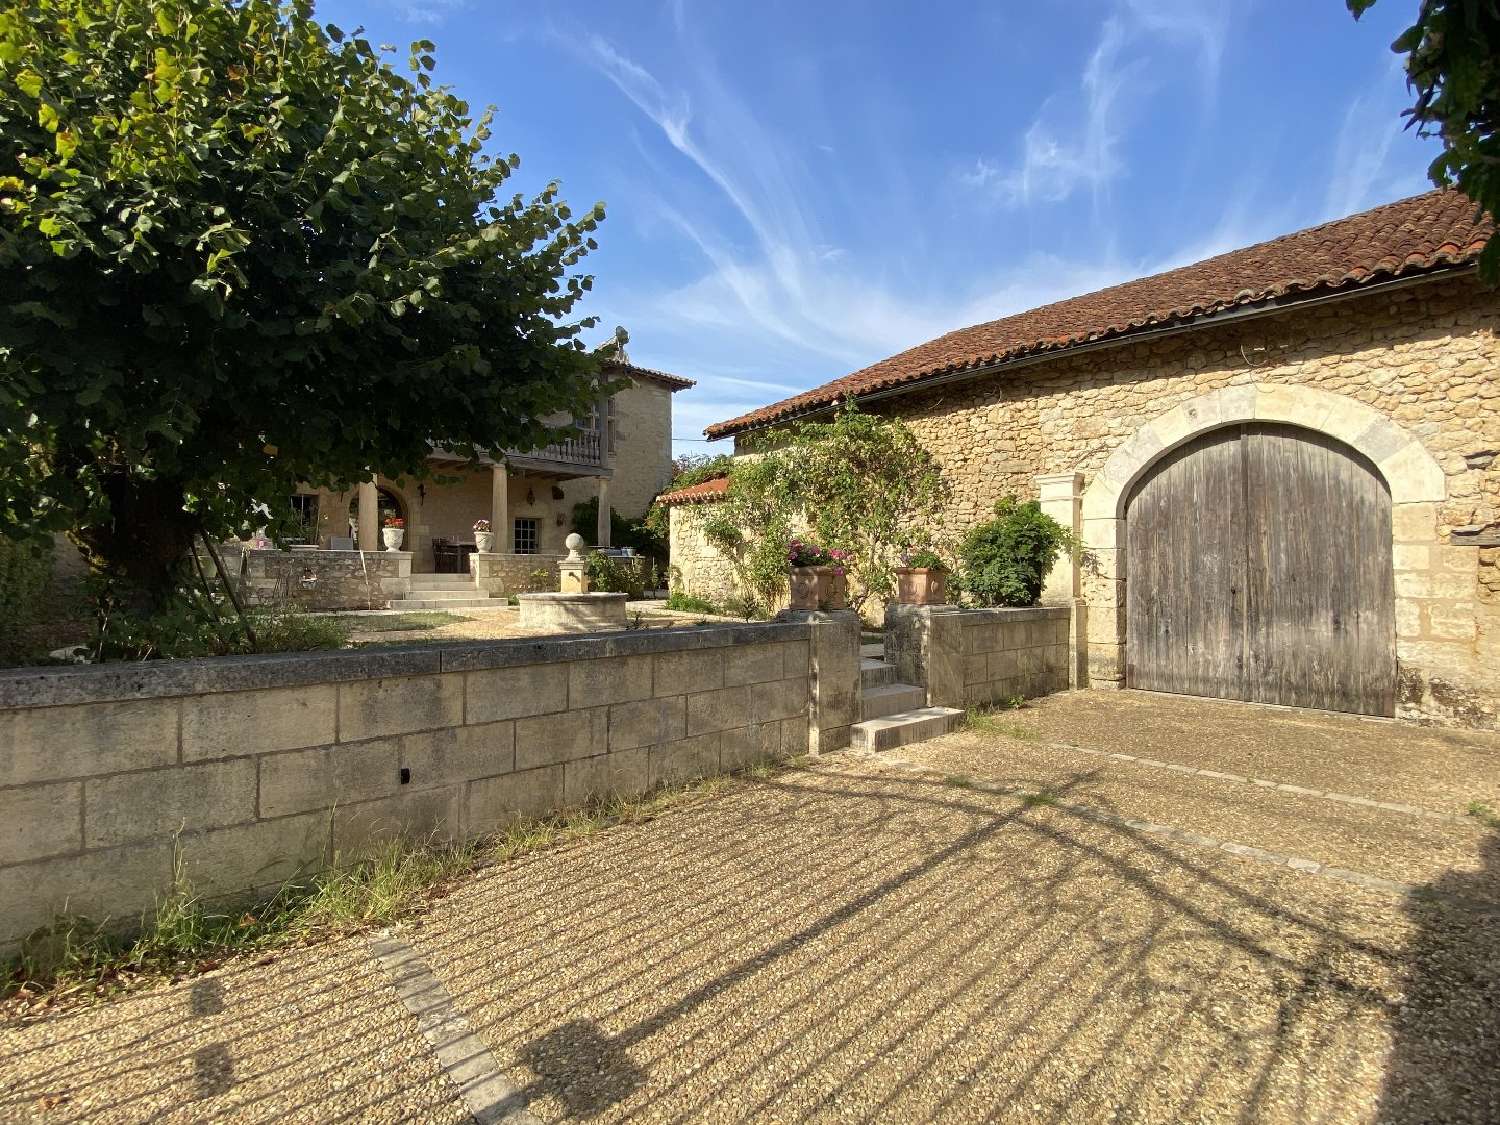  à vendre maison Brantôme Dordogne 6